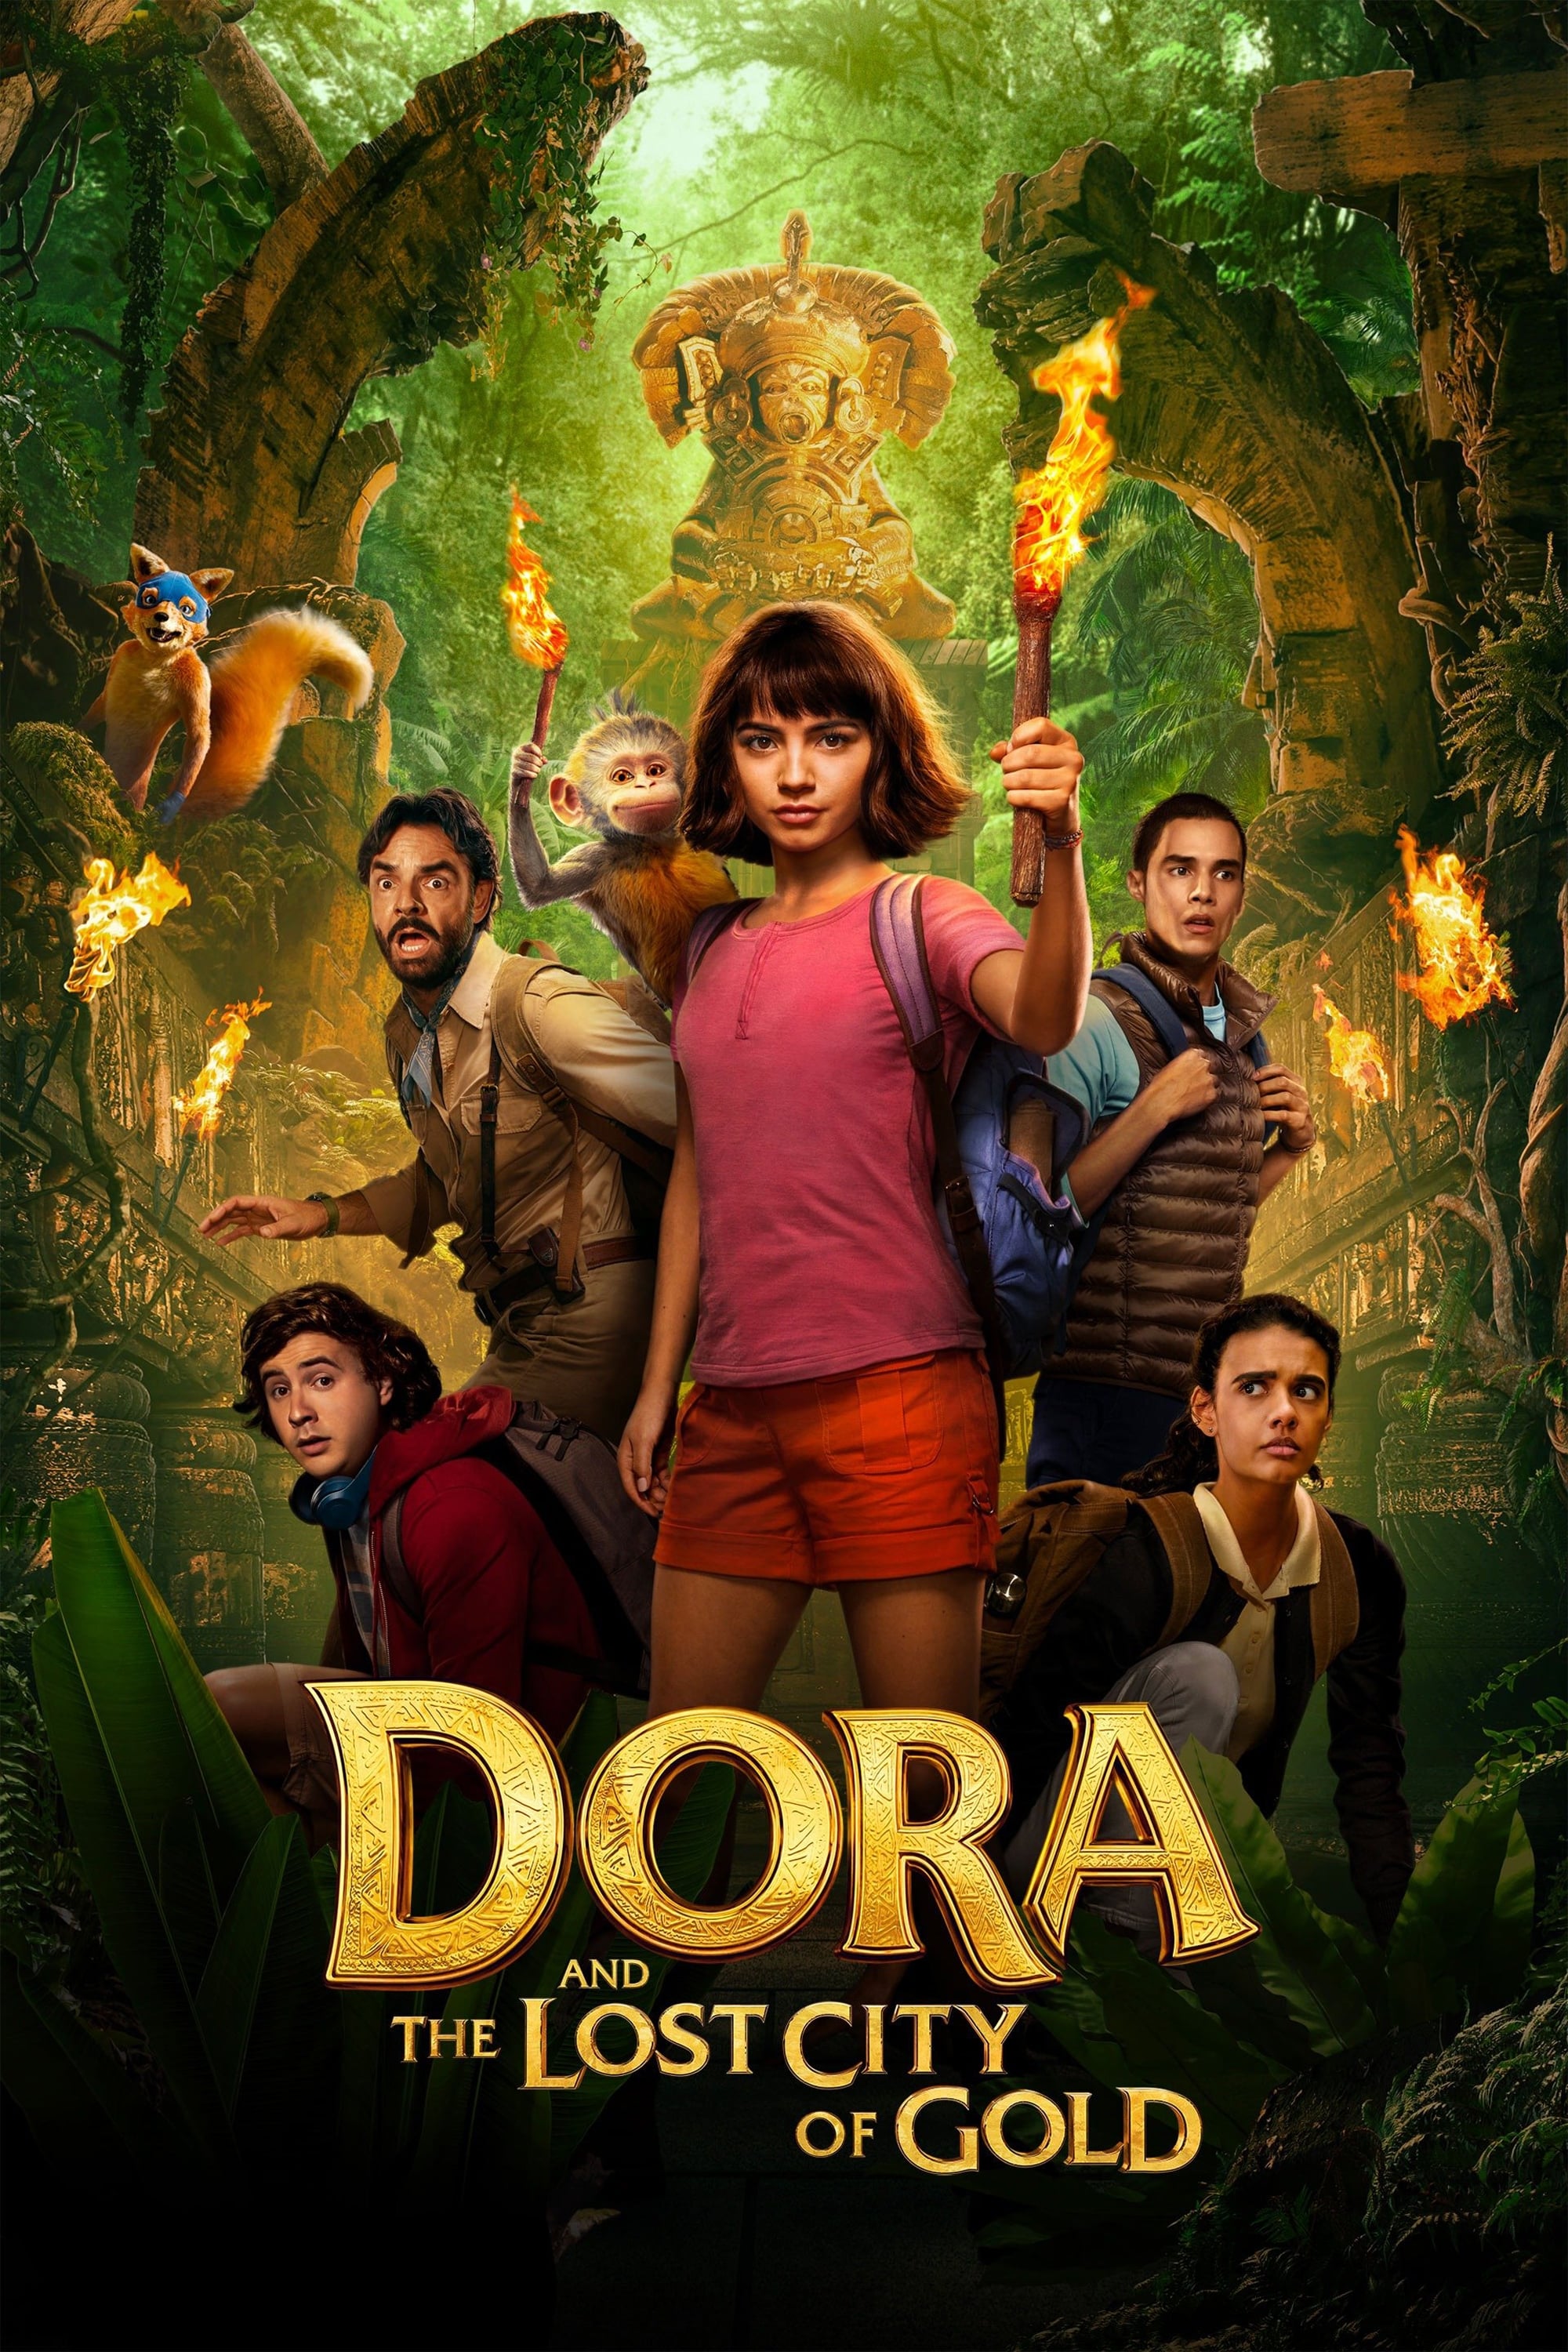 Dora et la cité perdue (2019)